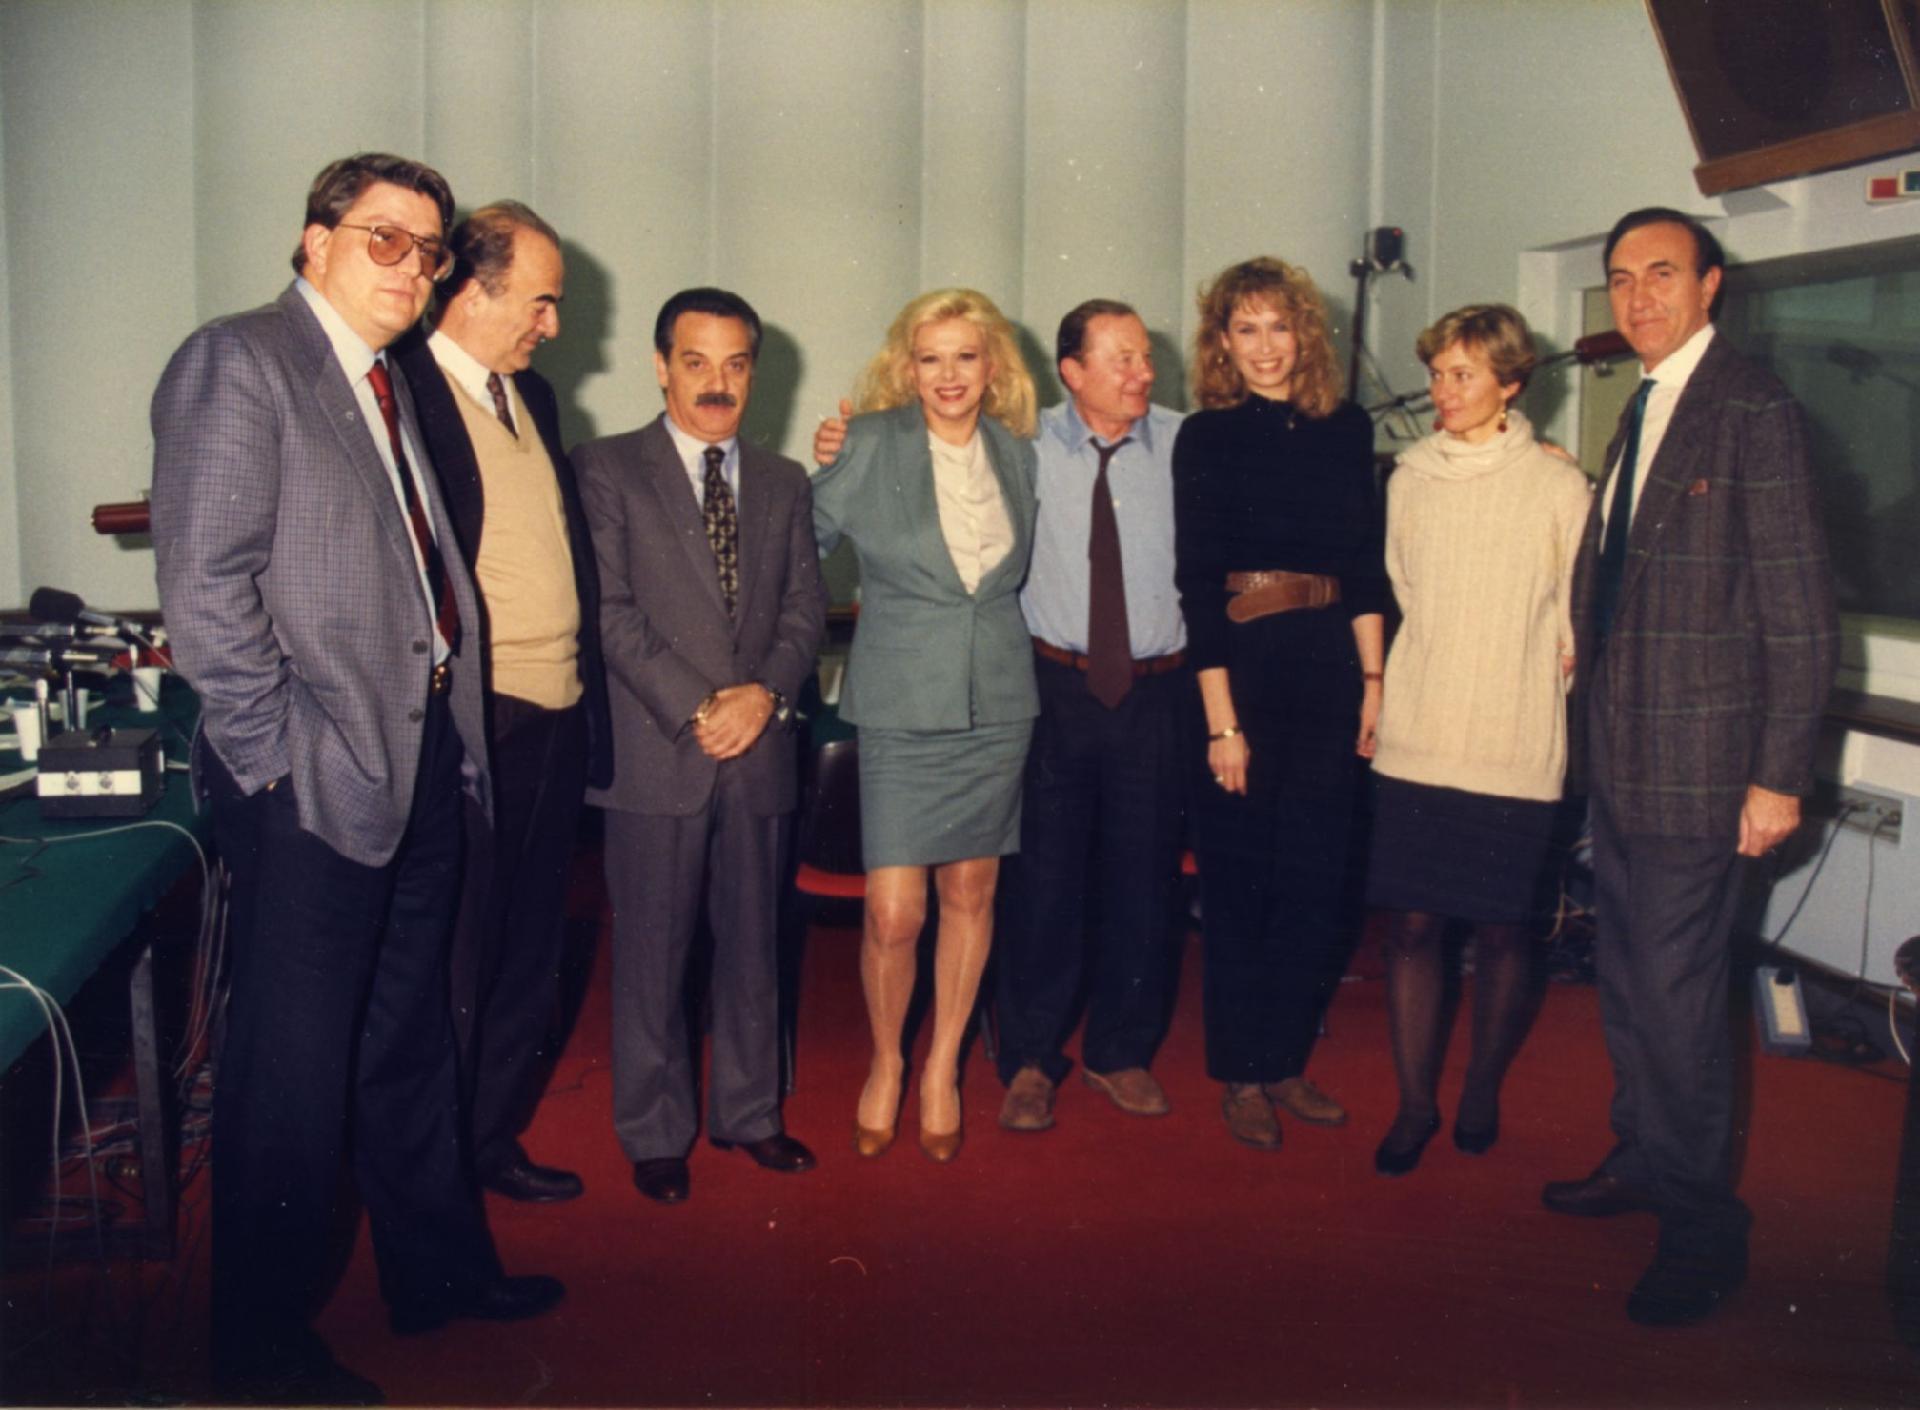 Gianni Bisiach con Arrigo Petacco, Sandra Milo, Pippo Baudo, due collaboratrici e altri a &quot;Radio anch&apos;io TV&quot; nello studio 8 di via Asiago n. 10 nello studio 8 di via Asiago n. 10 a Roma nel 1991